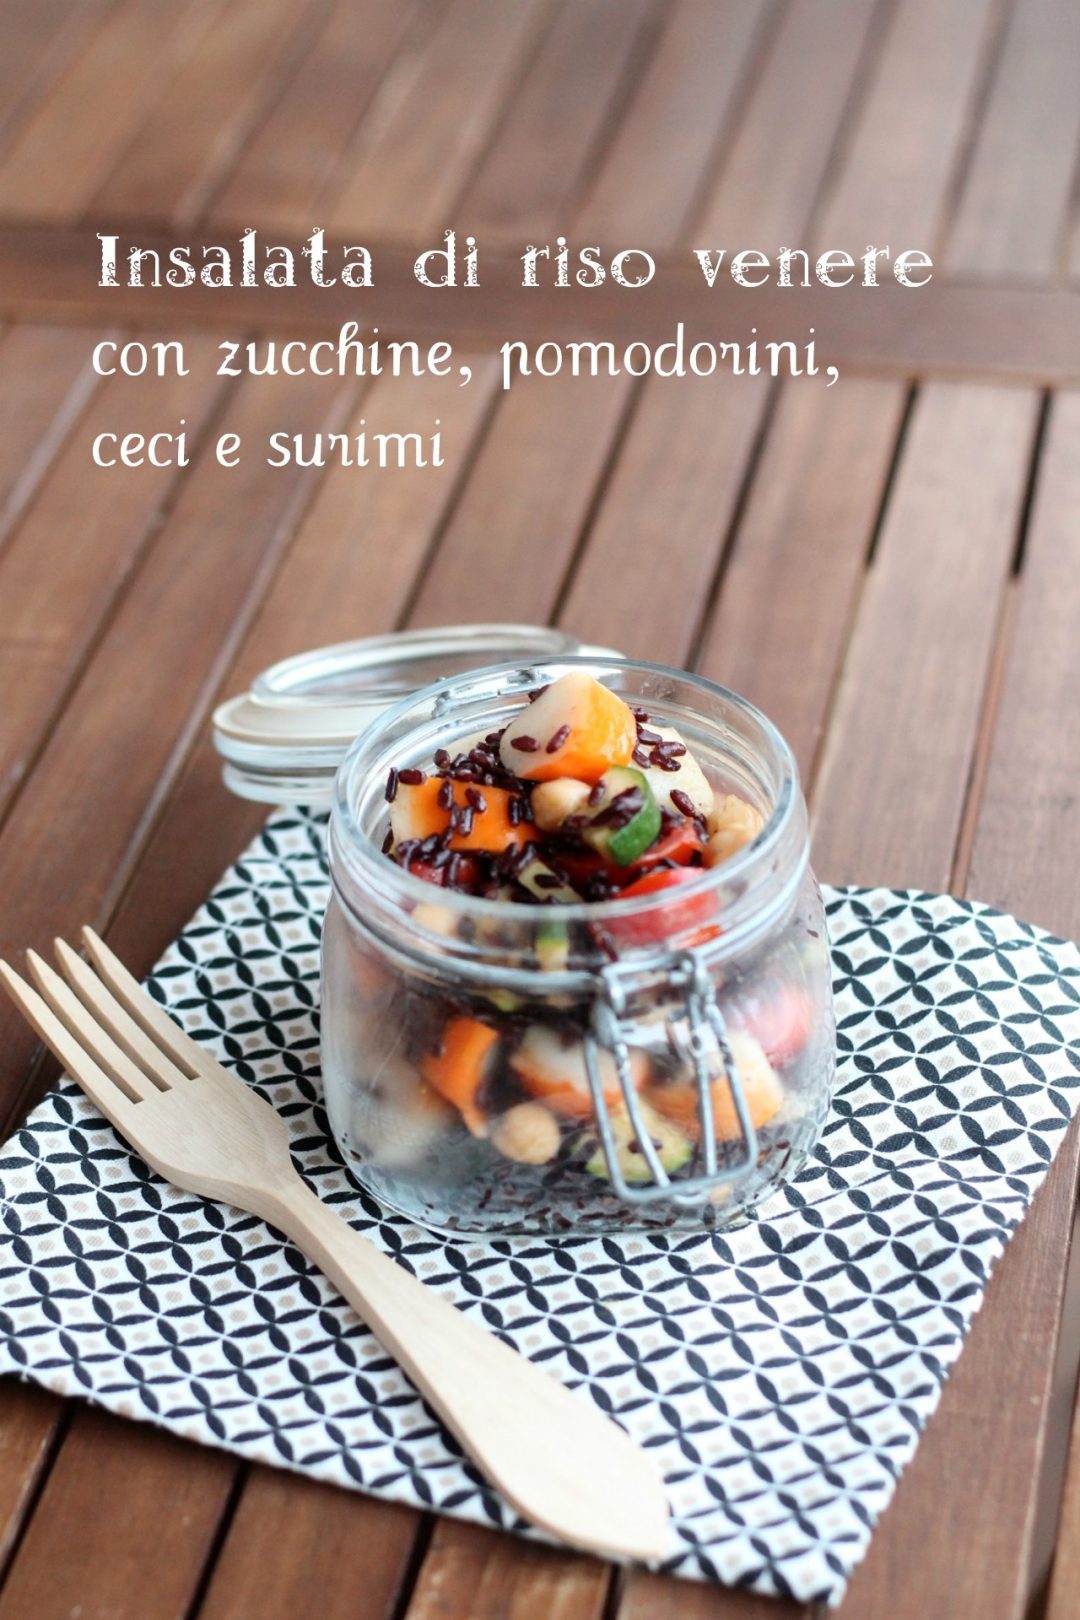 insalata-di-riso-venere-con-zucchine-pomodorini-ceci-e-surimi